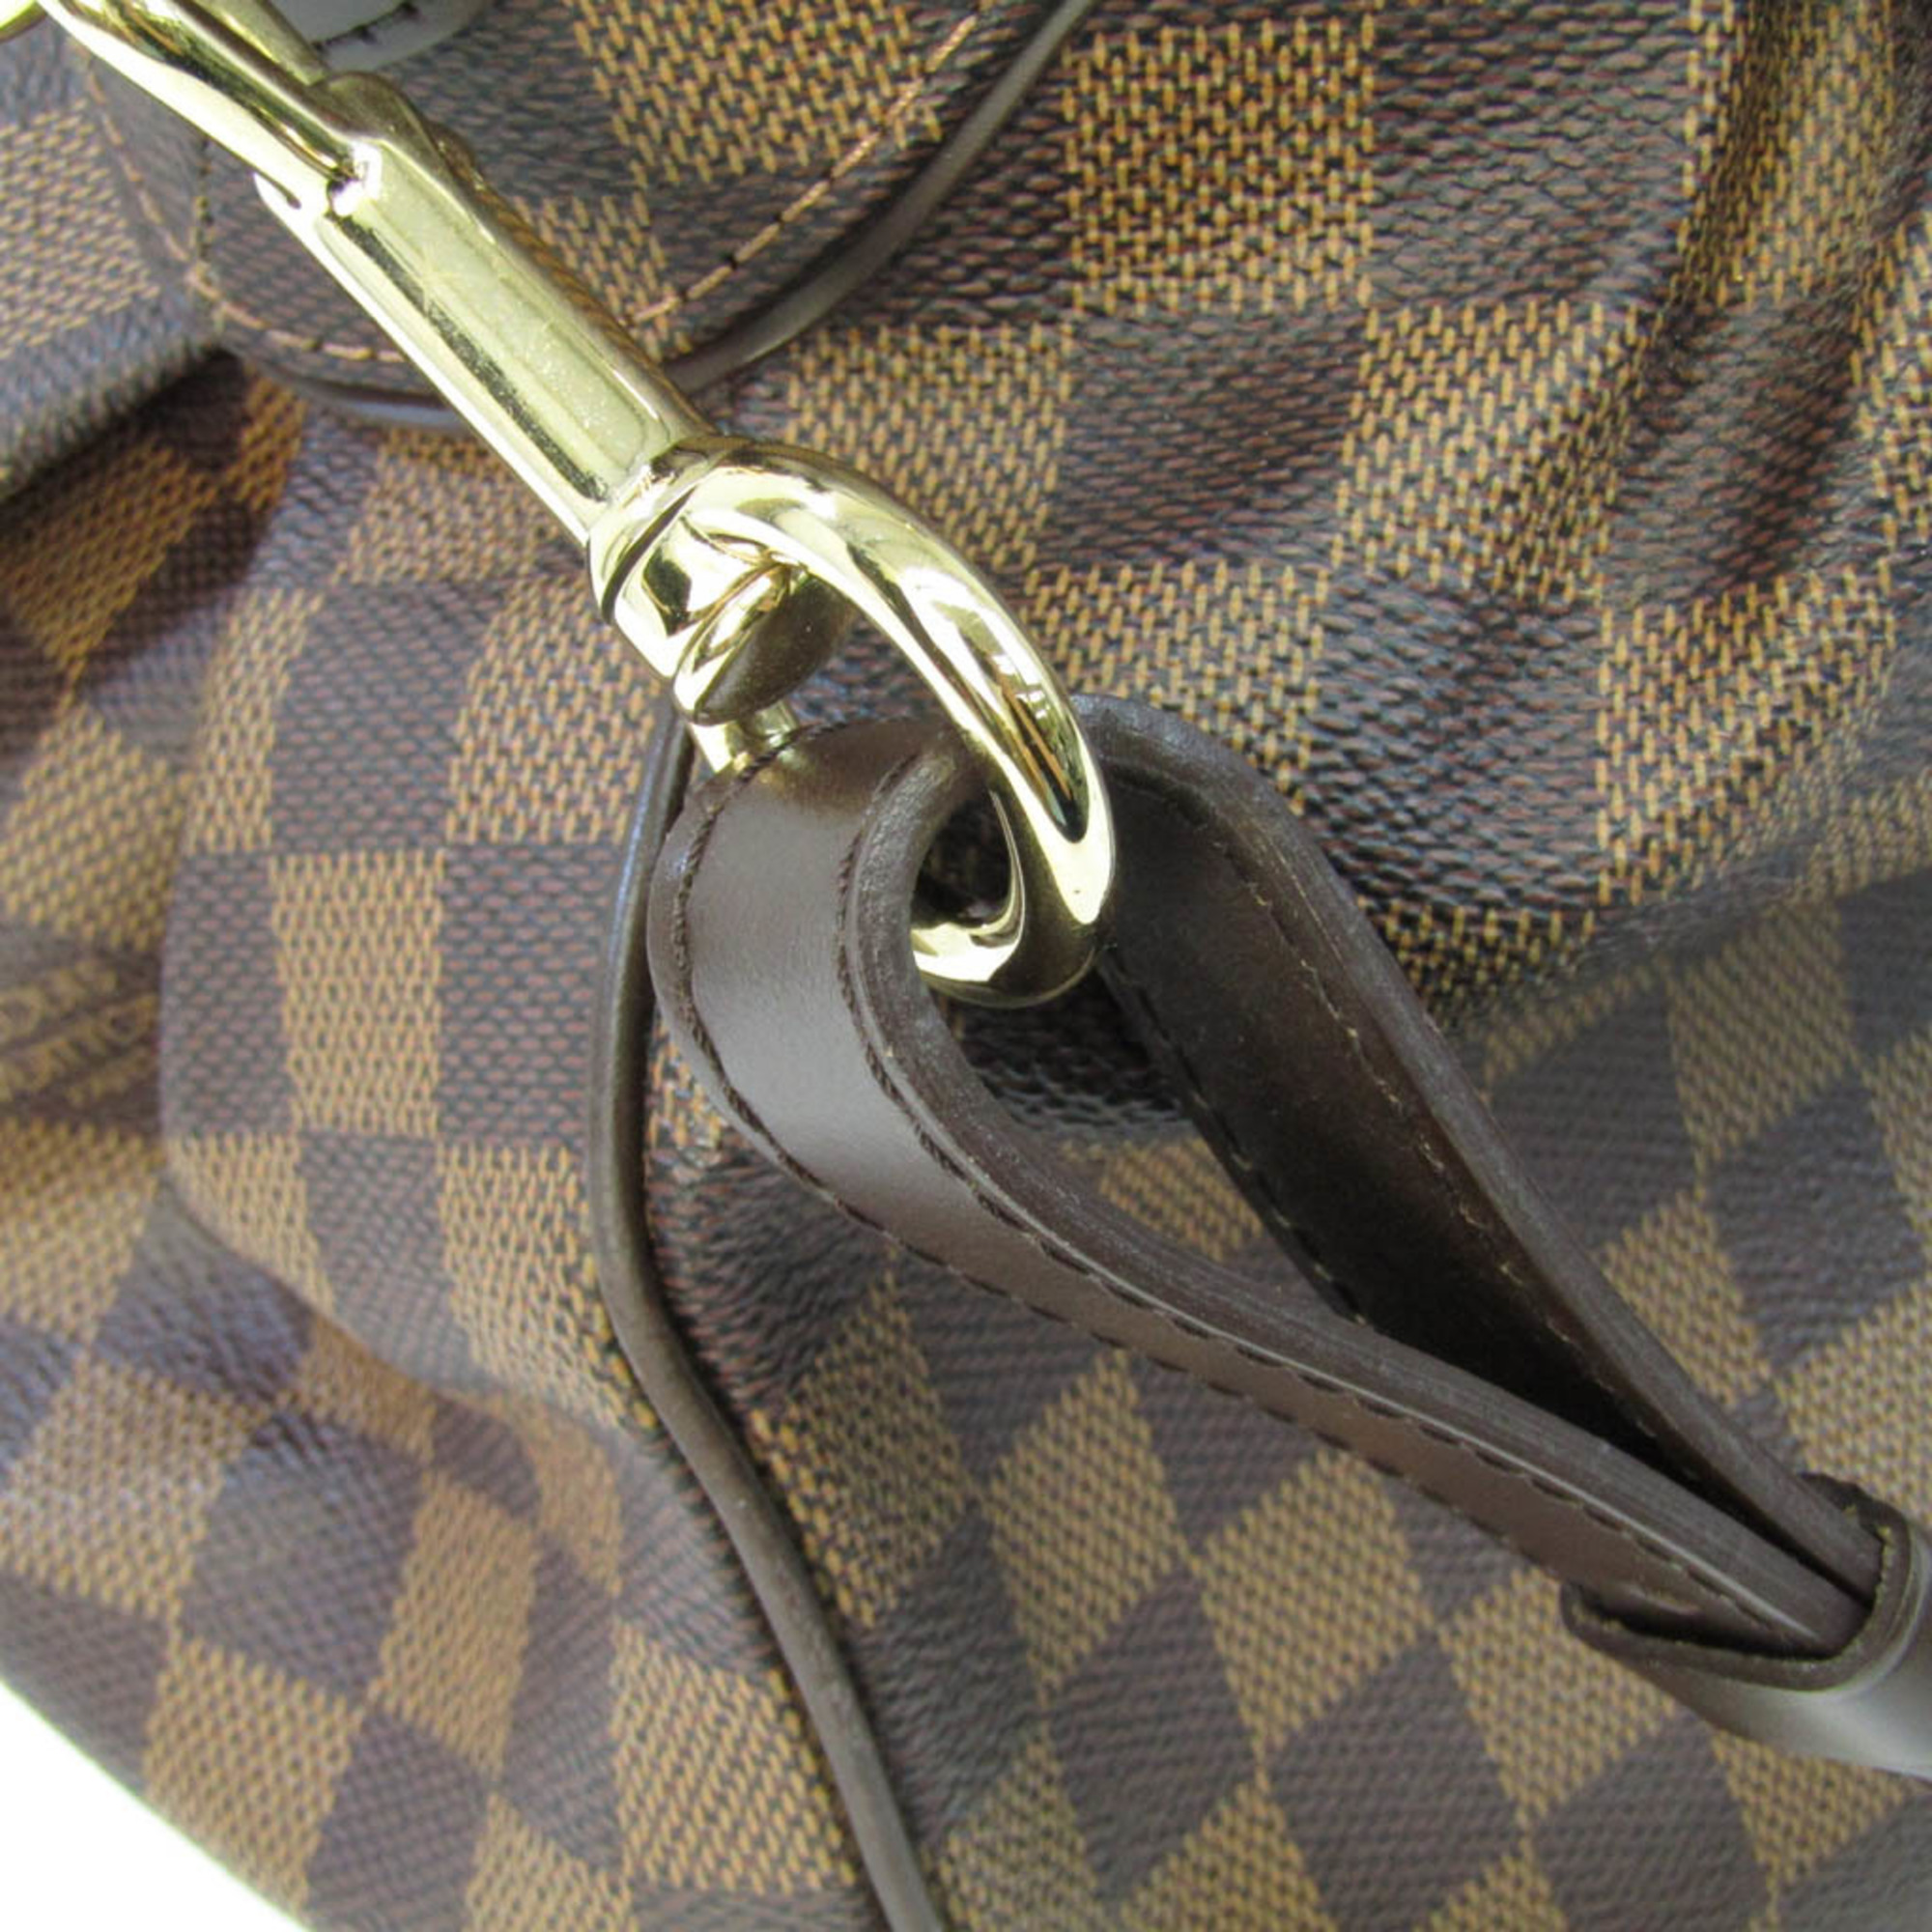 ルイ・ヴィトン(Louis Vuitton) ダミエ トレヴィGM N51998 レディース ハンドバッグ,ショルダーバッグ エベヌ